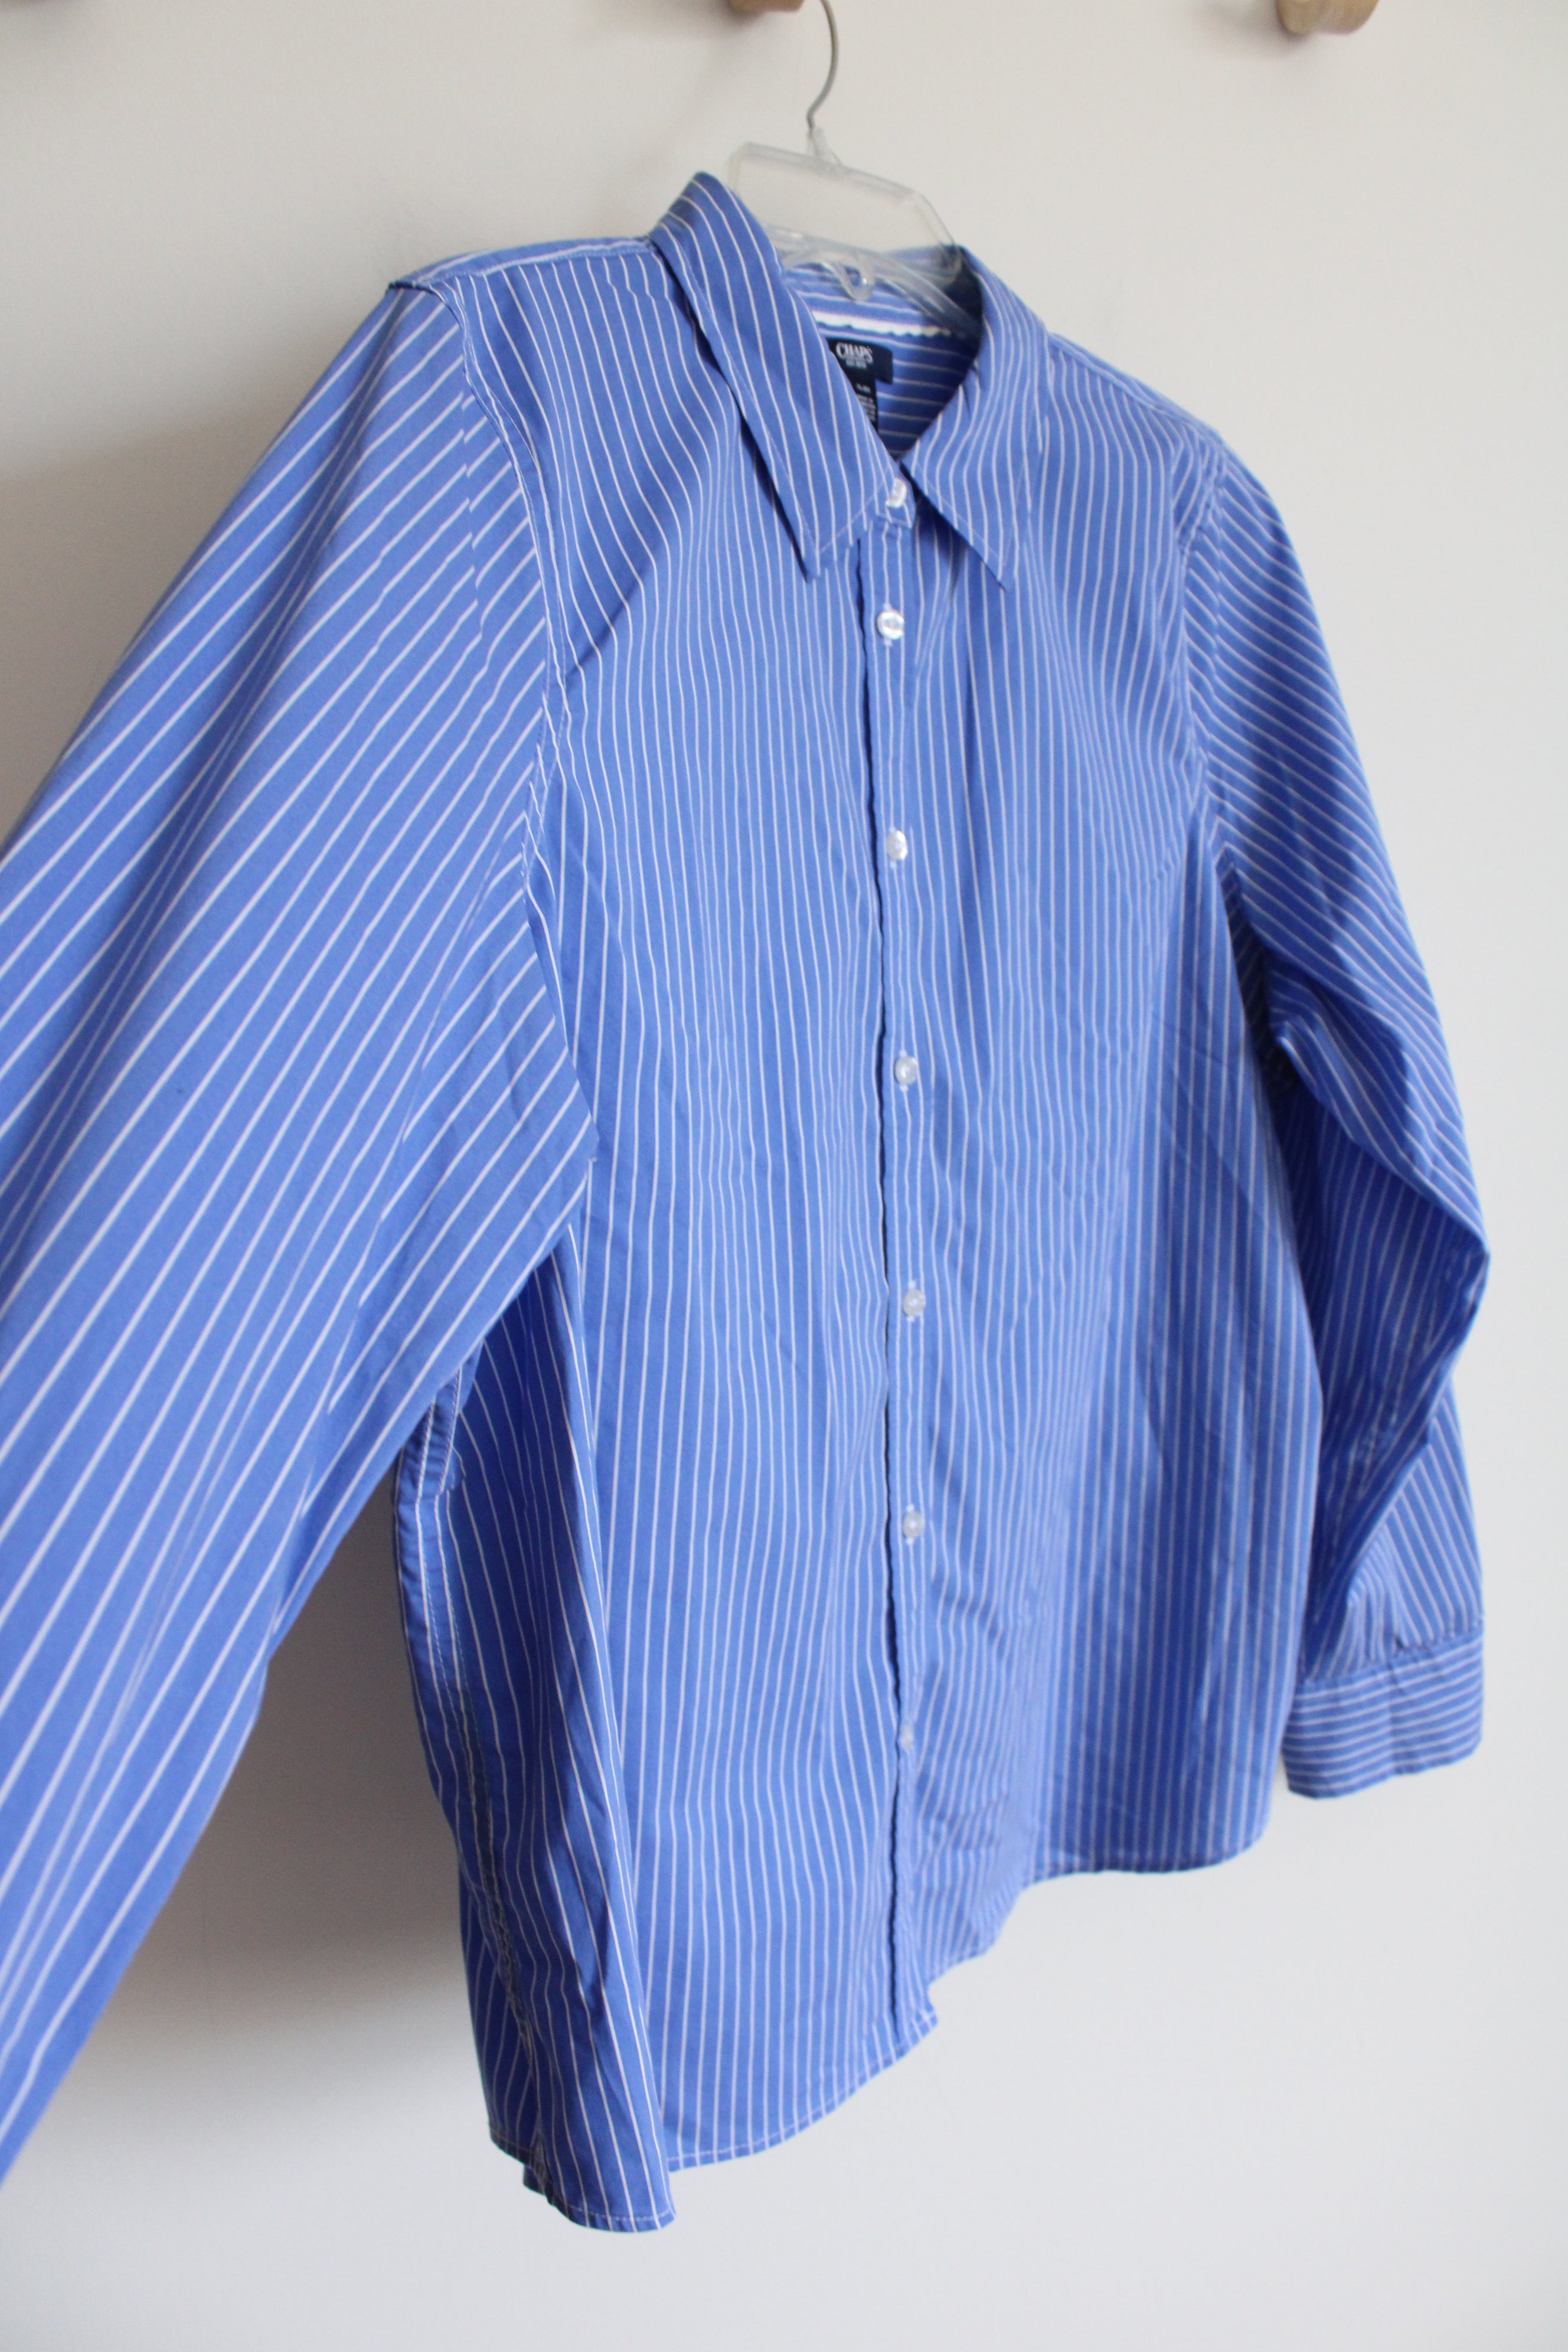 Chaps Blue White Striped Button Down Shirt | XL